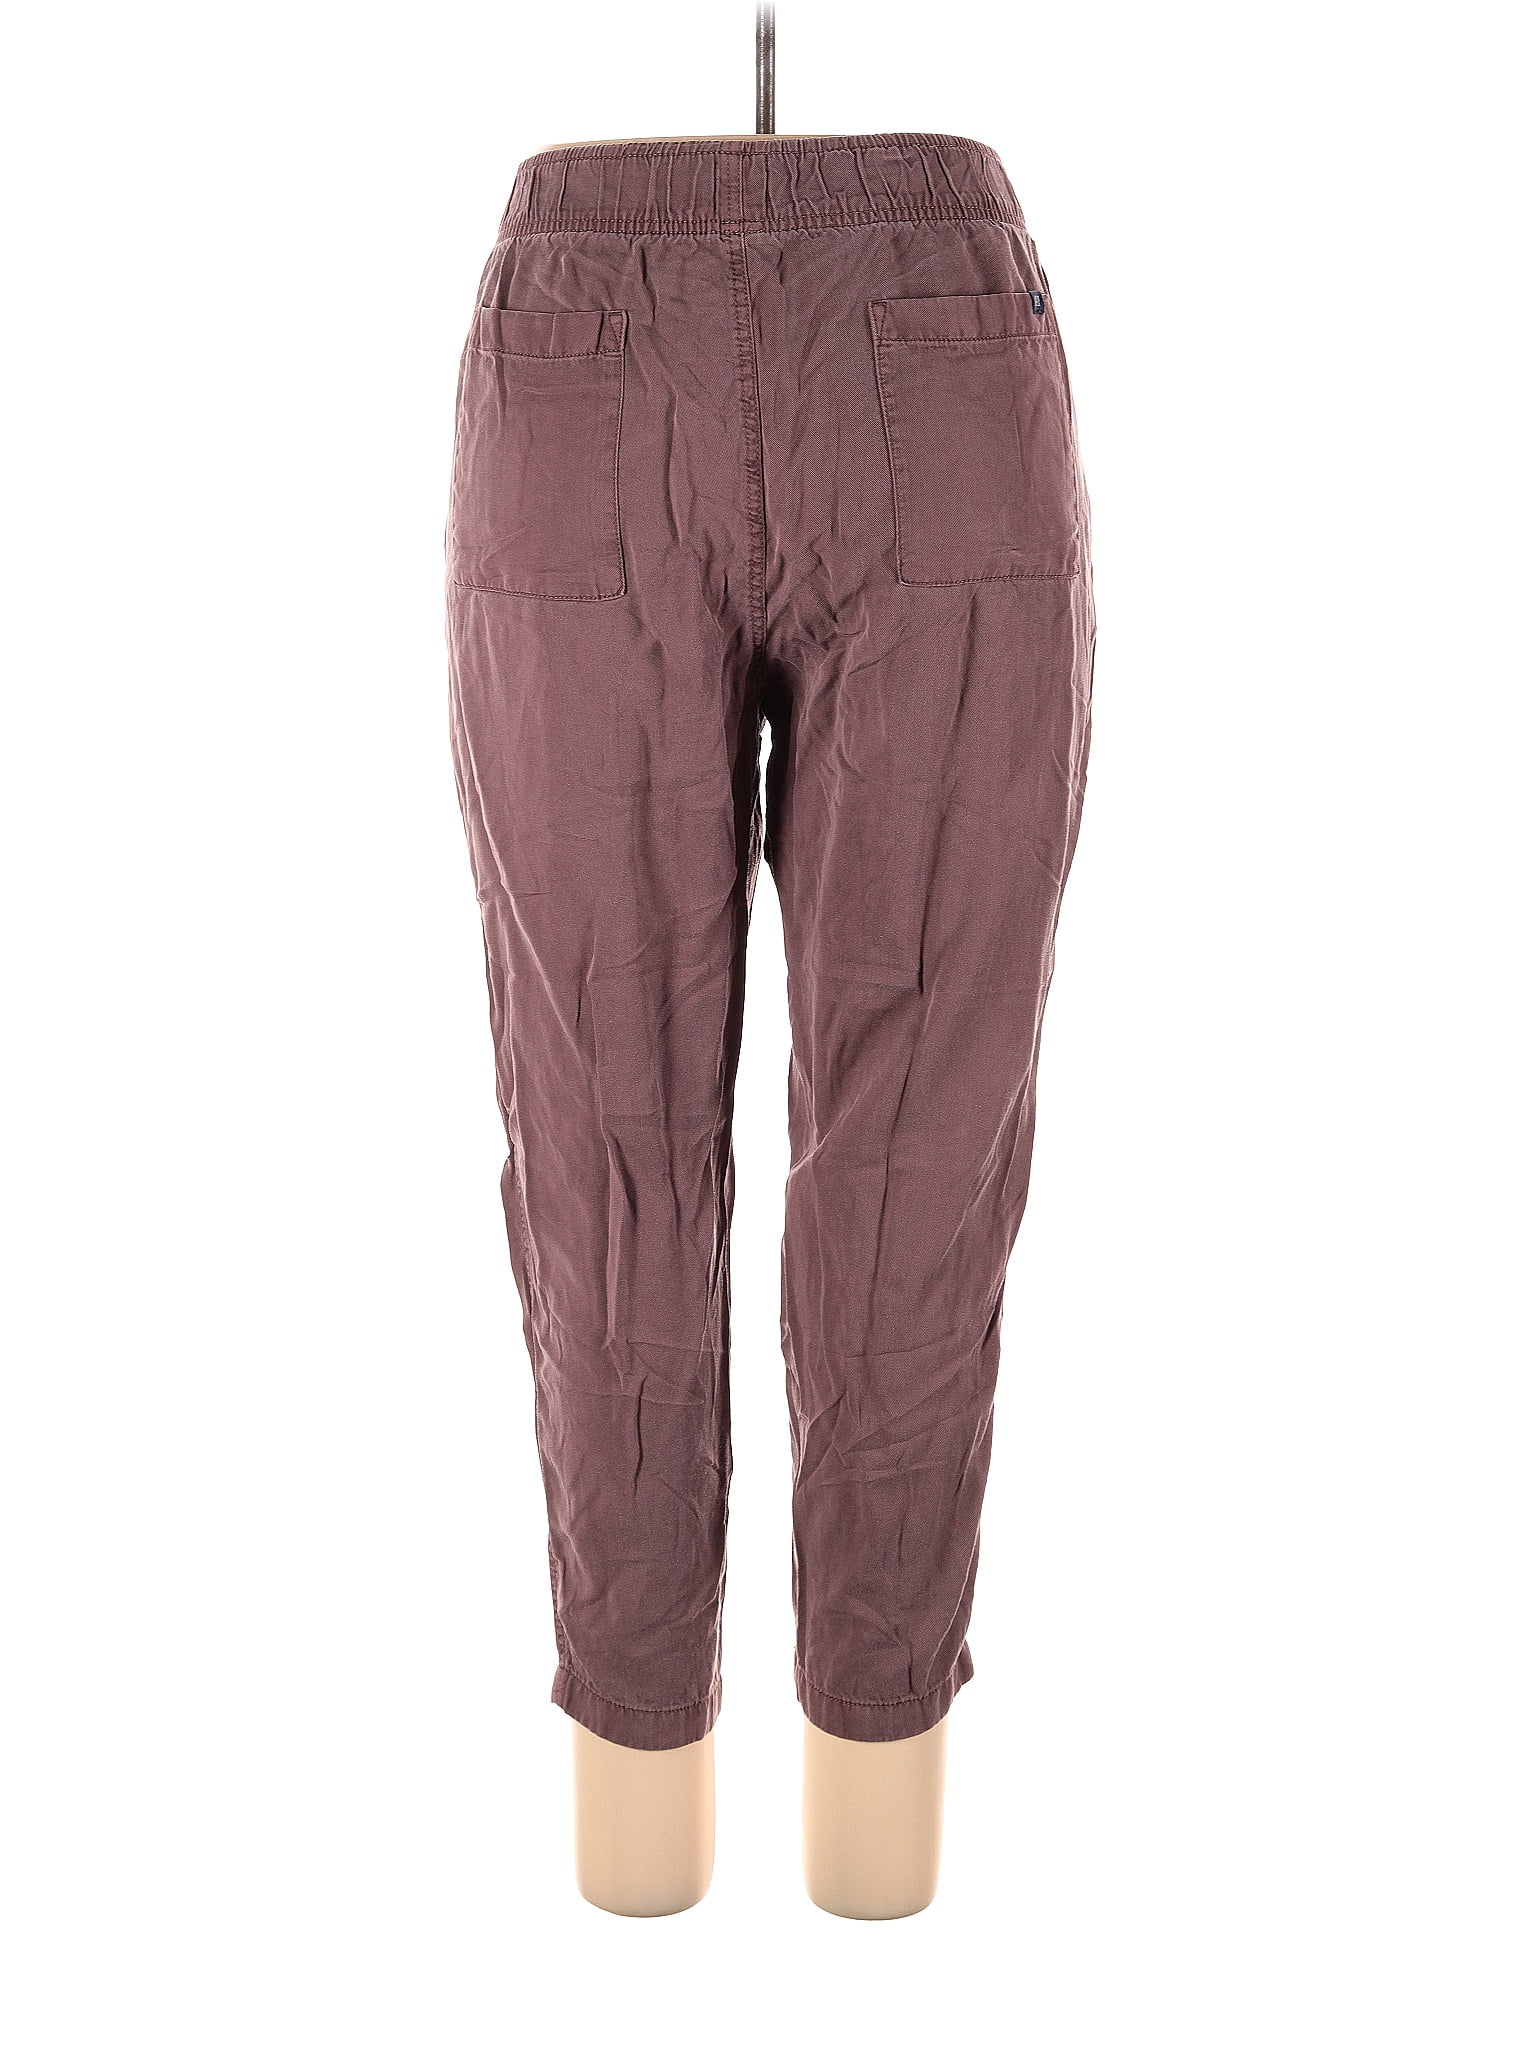 Gap 100% Lyocell Burgundy Cargo Pants Size XL - 70% off